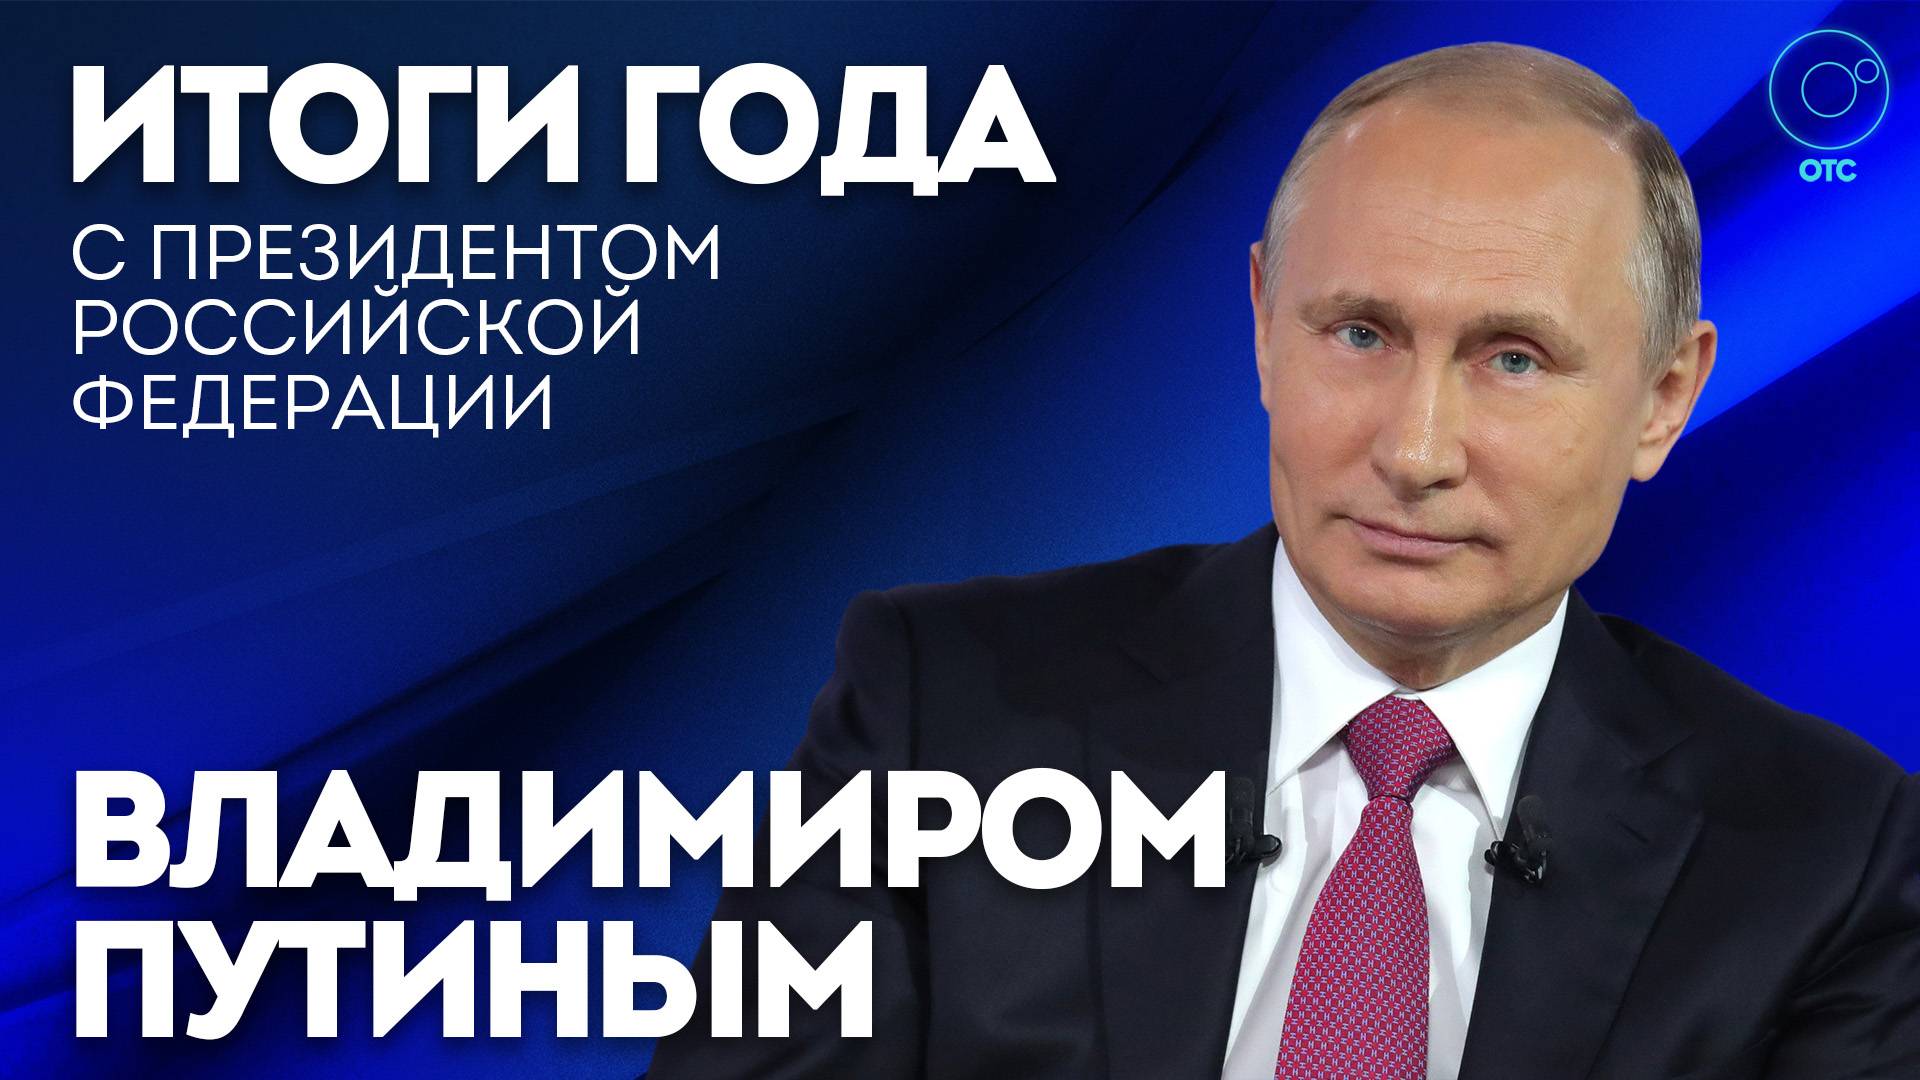 Владимир Путин:  прямая линия и пресс-конференция